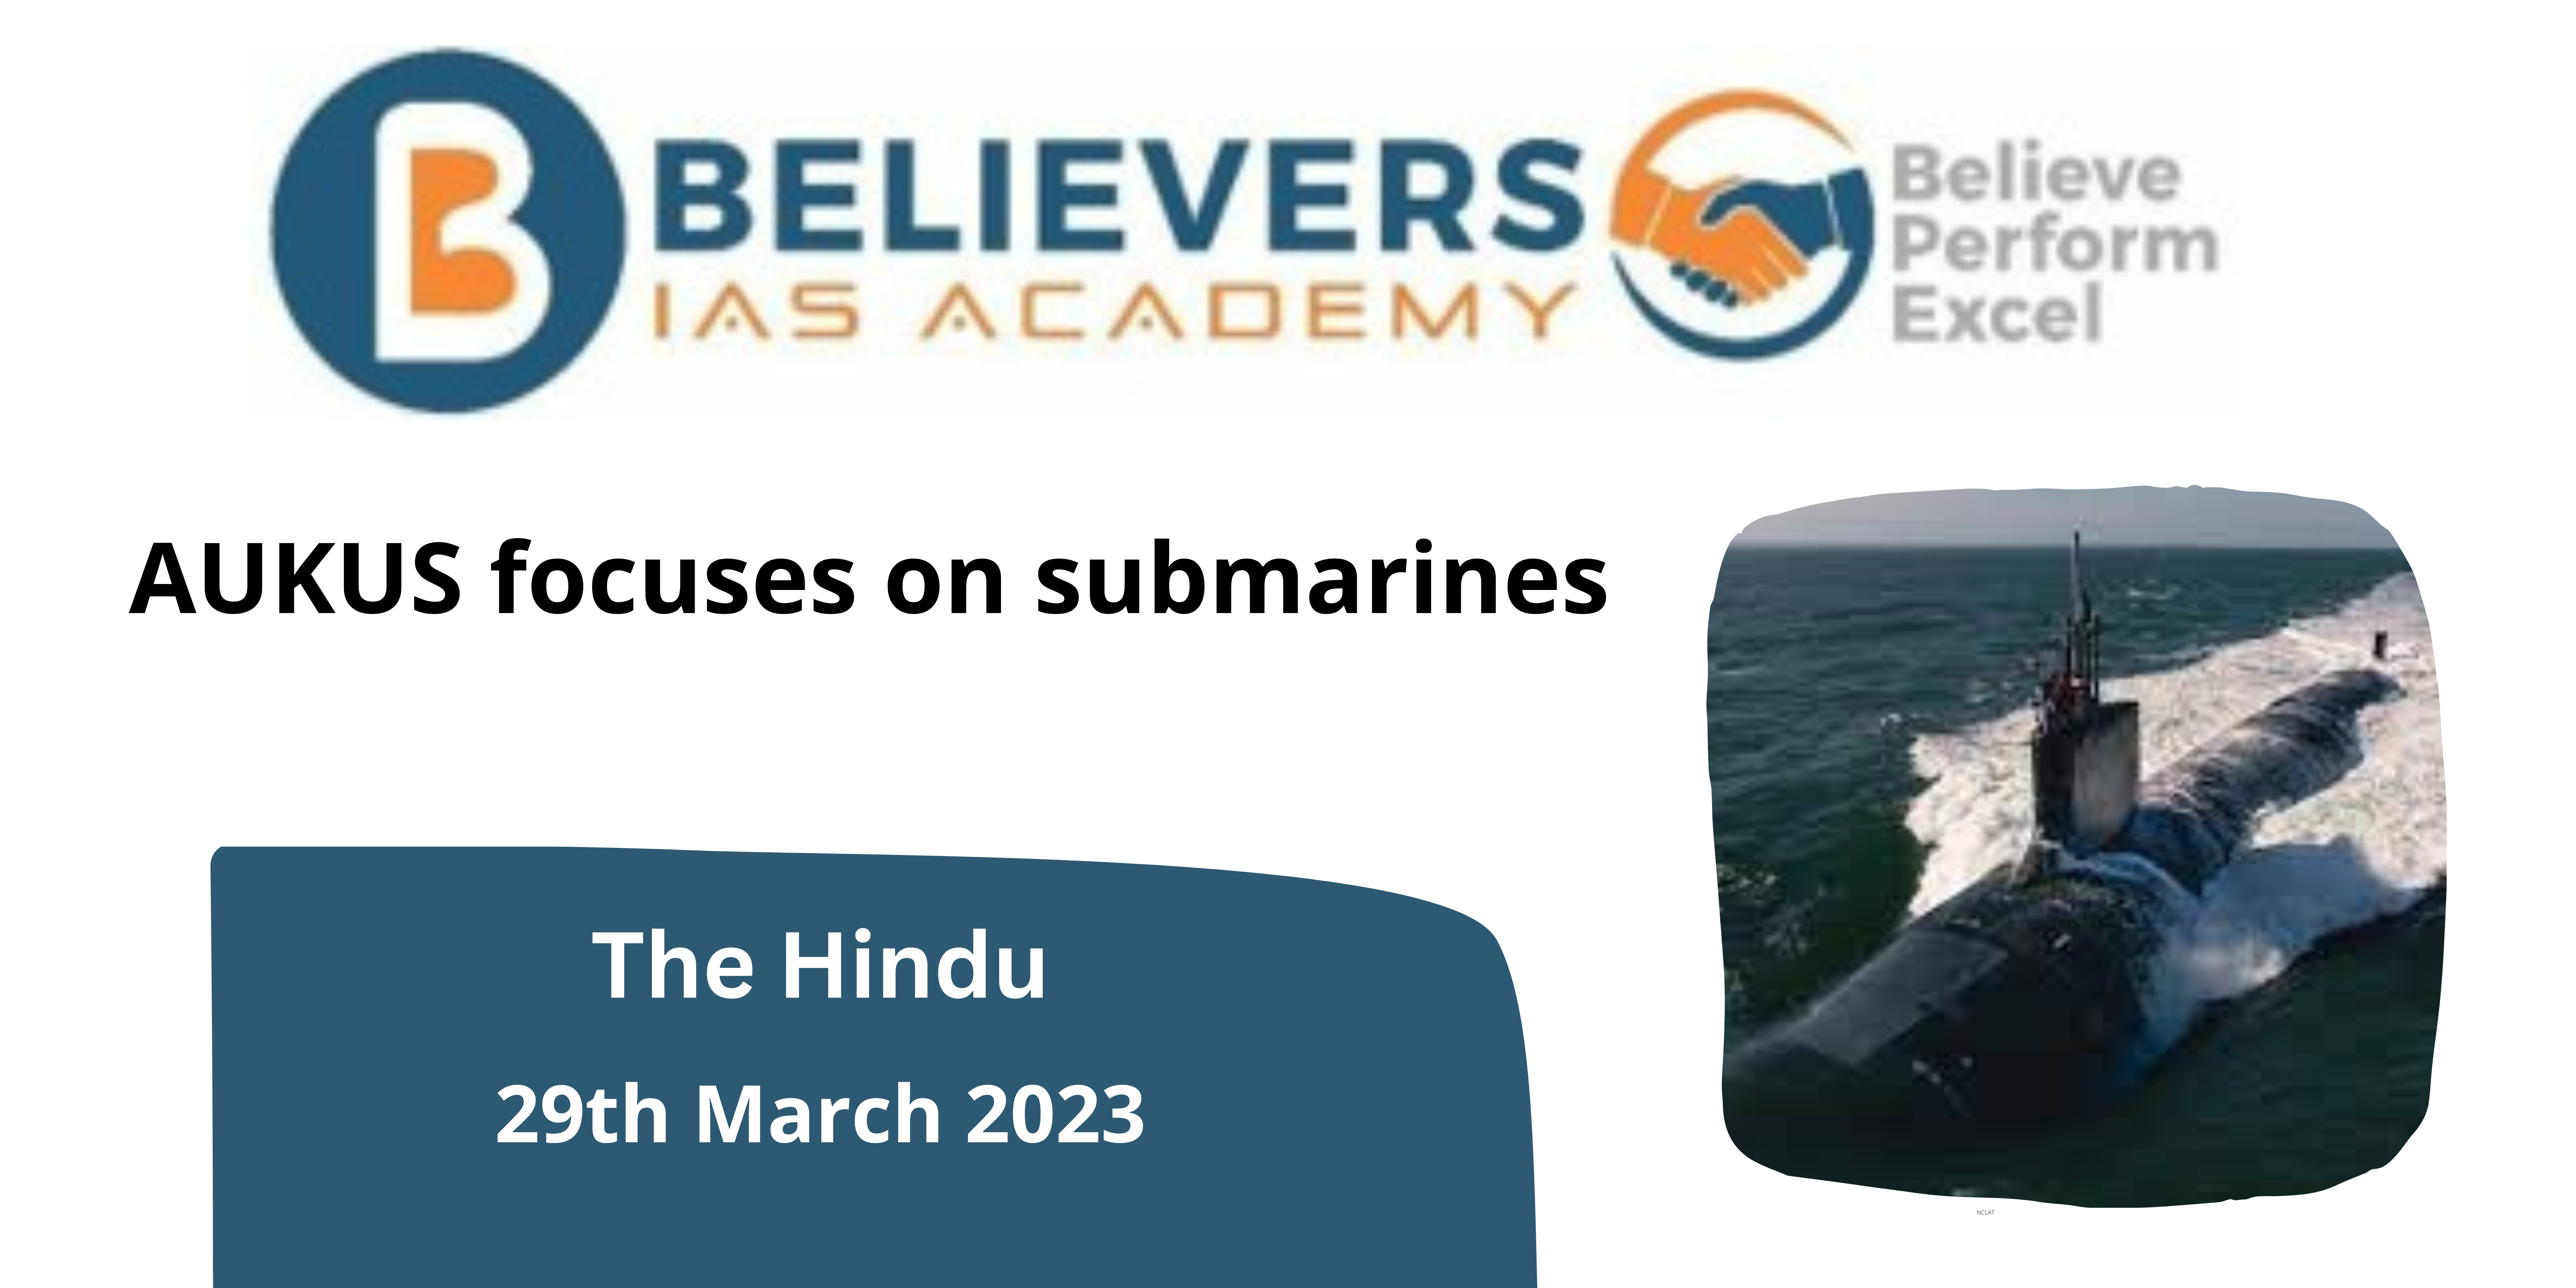 AUKUS focuses on submarines